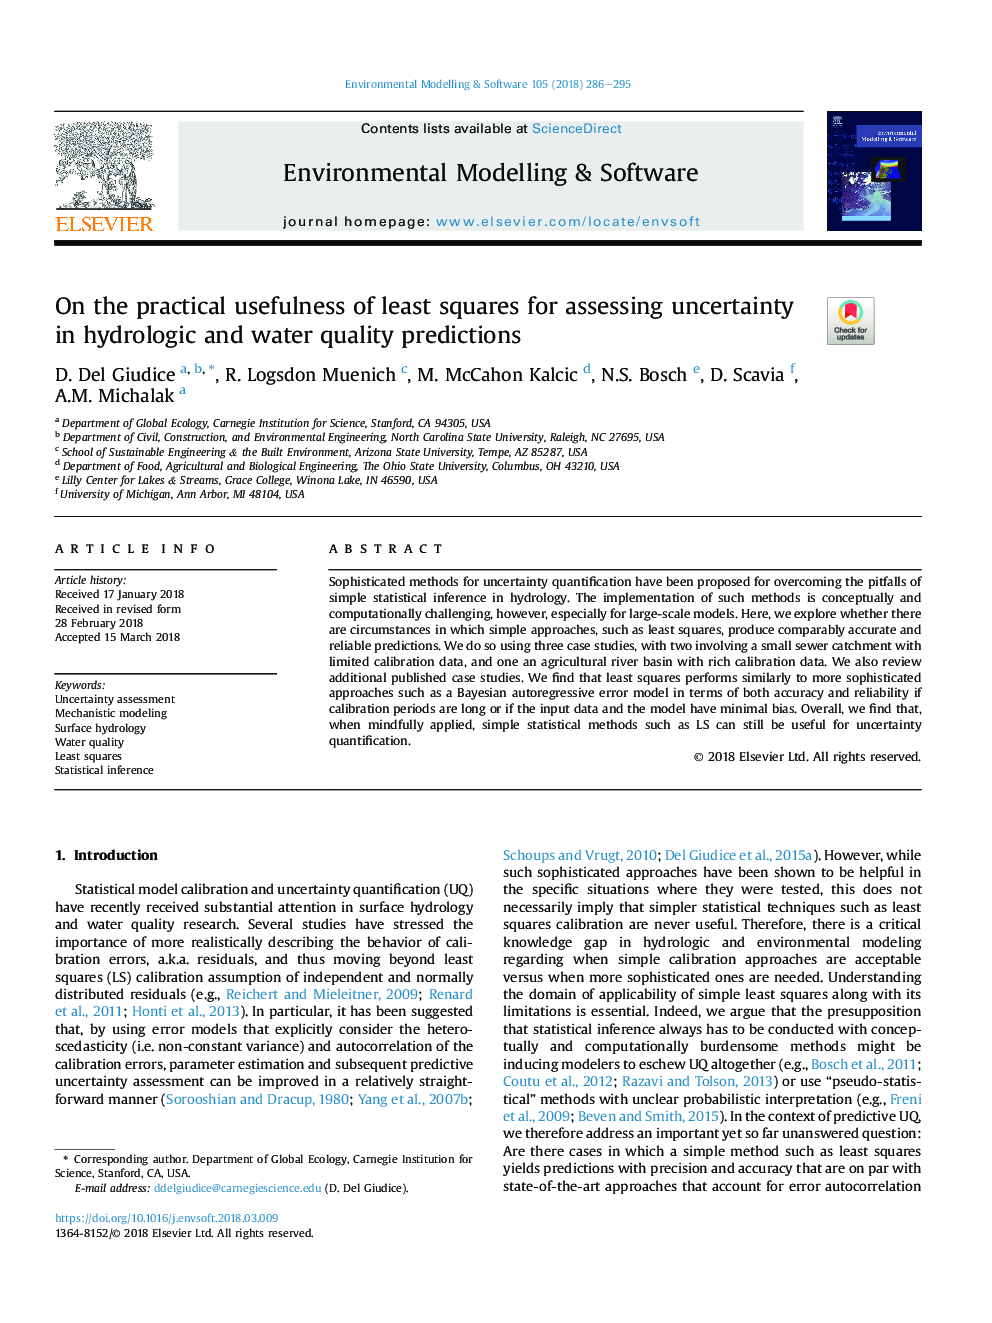 در مورد کاربرد مفید ترین مربعات برای ارزیابی عدم قطعیت در پیش بینی های هیدرولوژیکی و کیفیت آب 